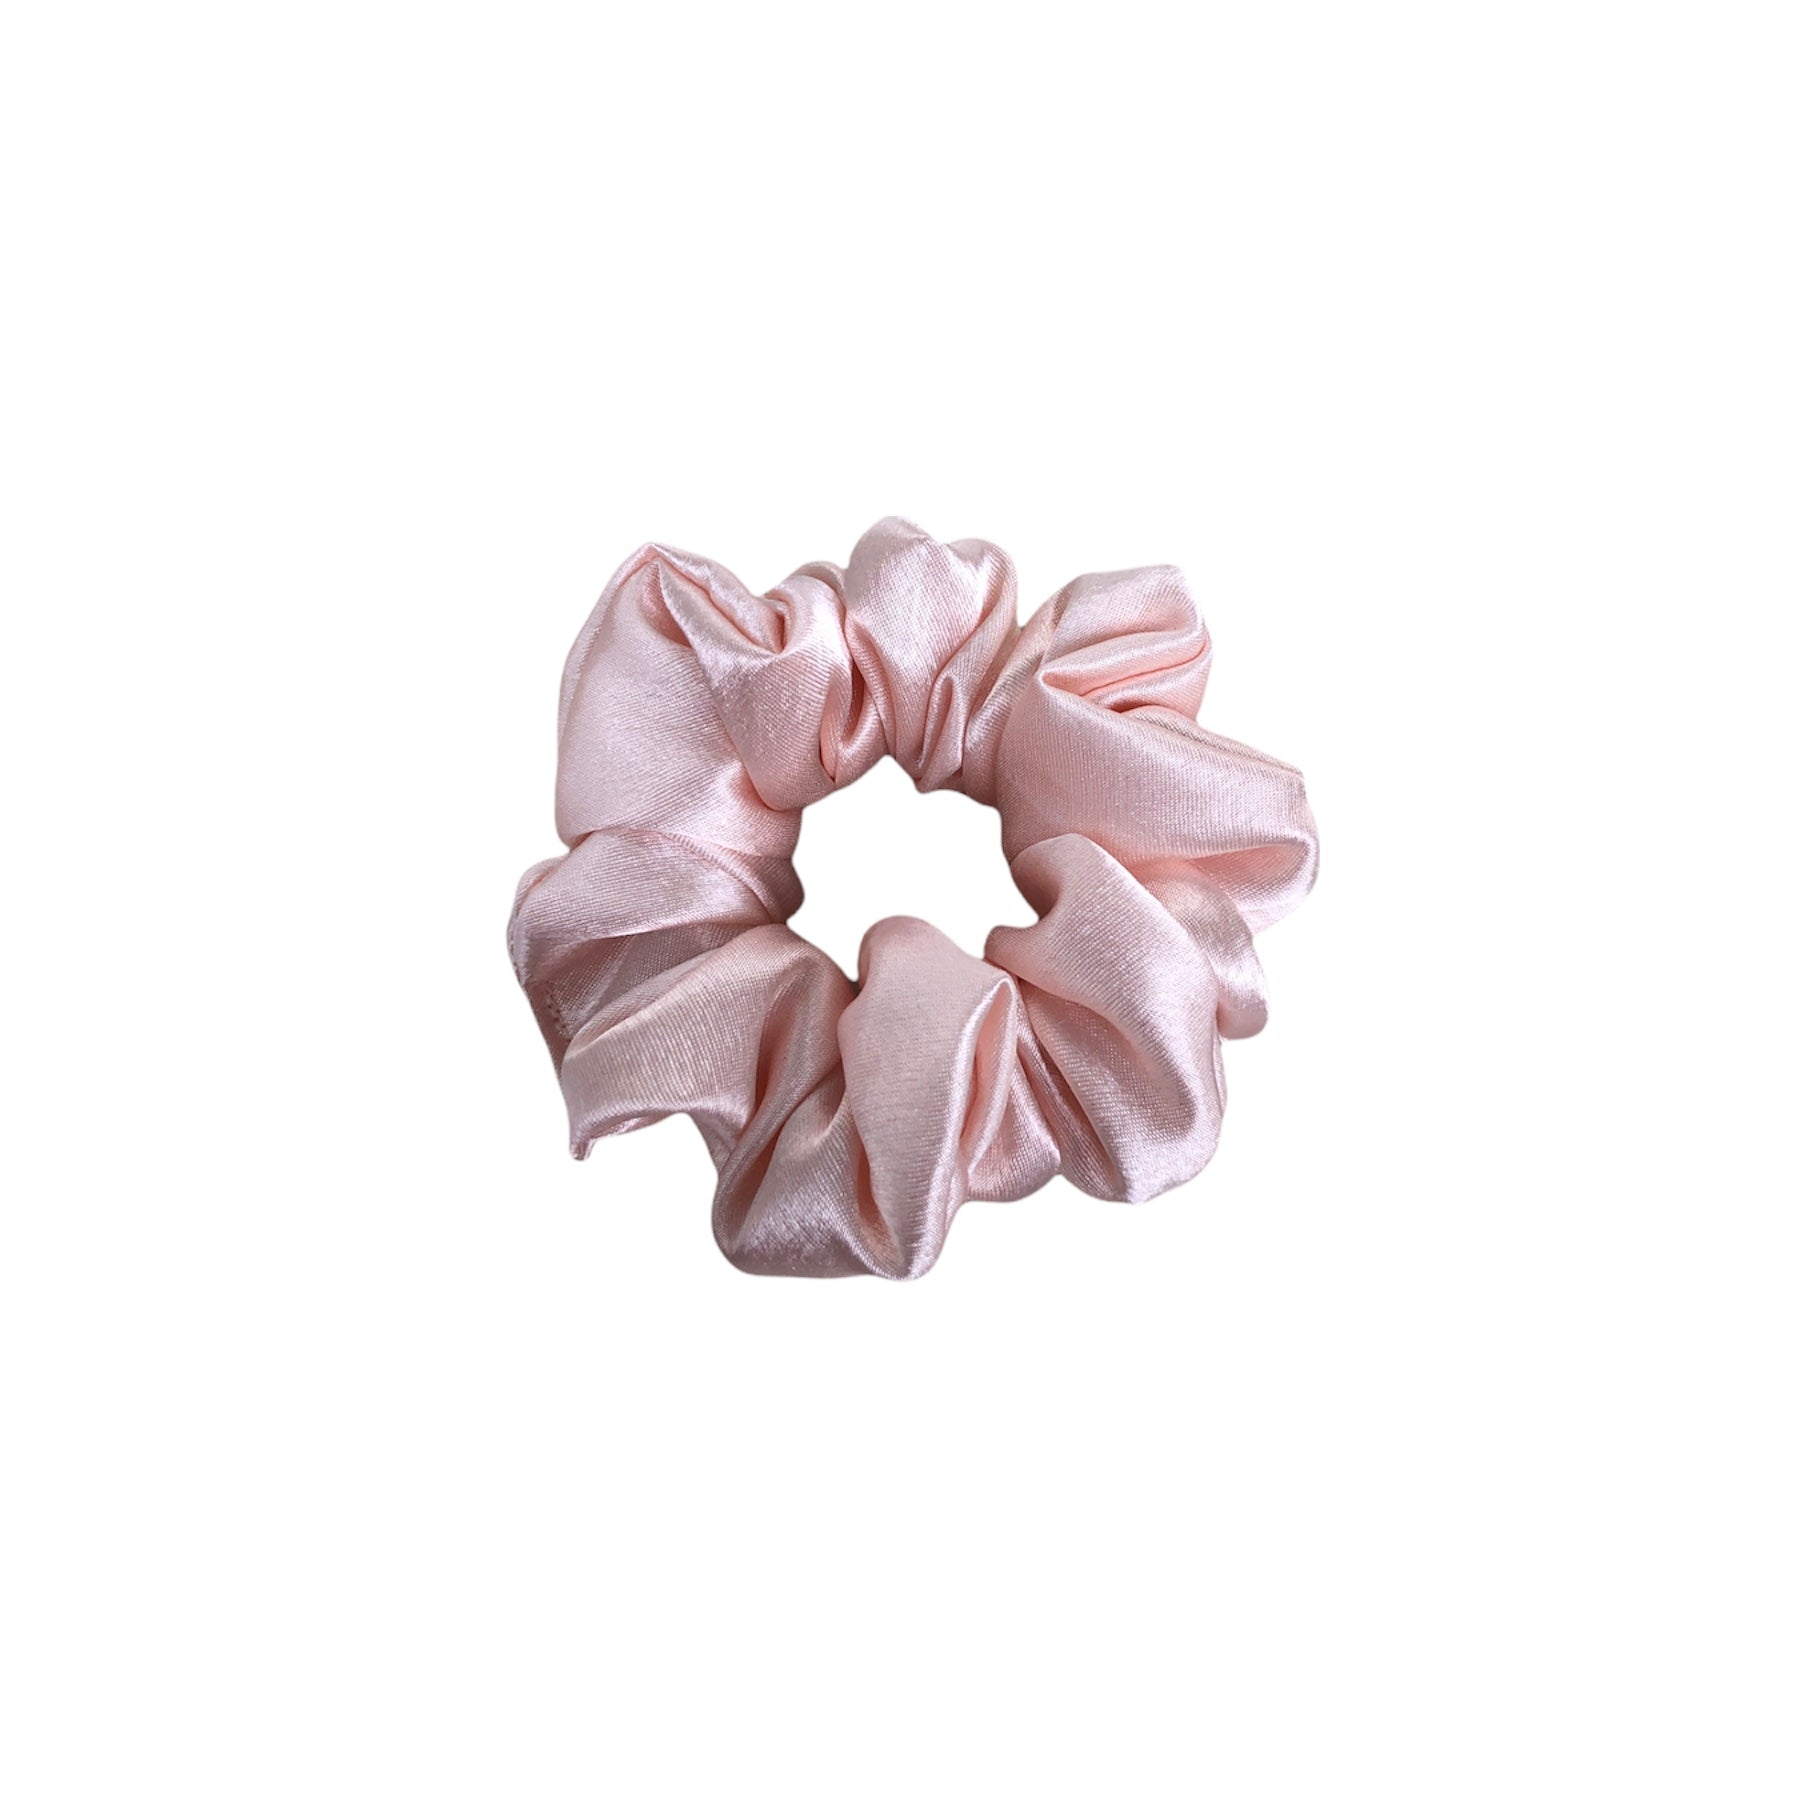 Petite Rosalia Scrunchie. A small and mini pastel peach blush pink satin scrunchie.